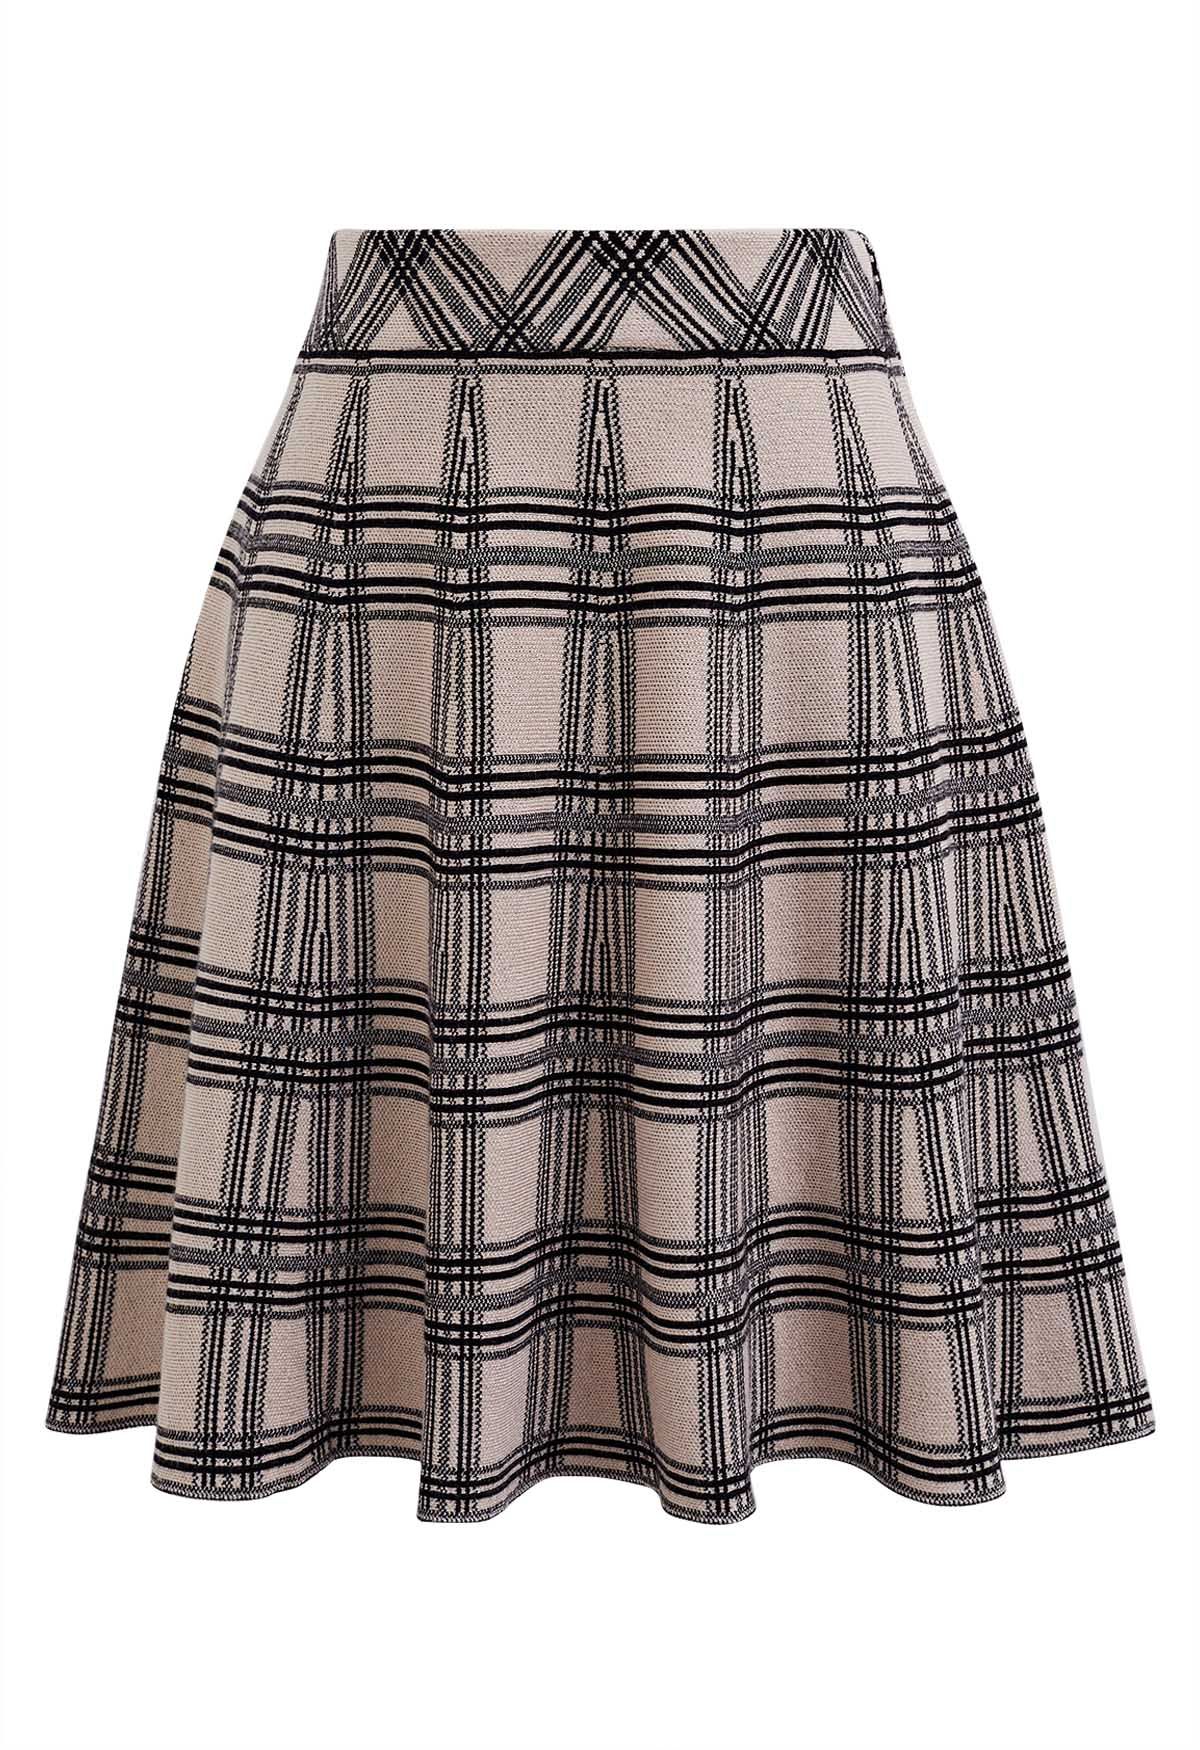 Plaid Knit High Waist Mini Skirt in Light Tan